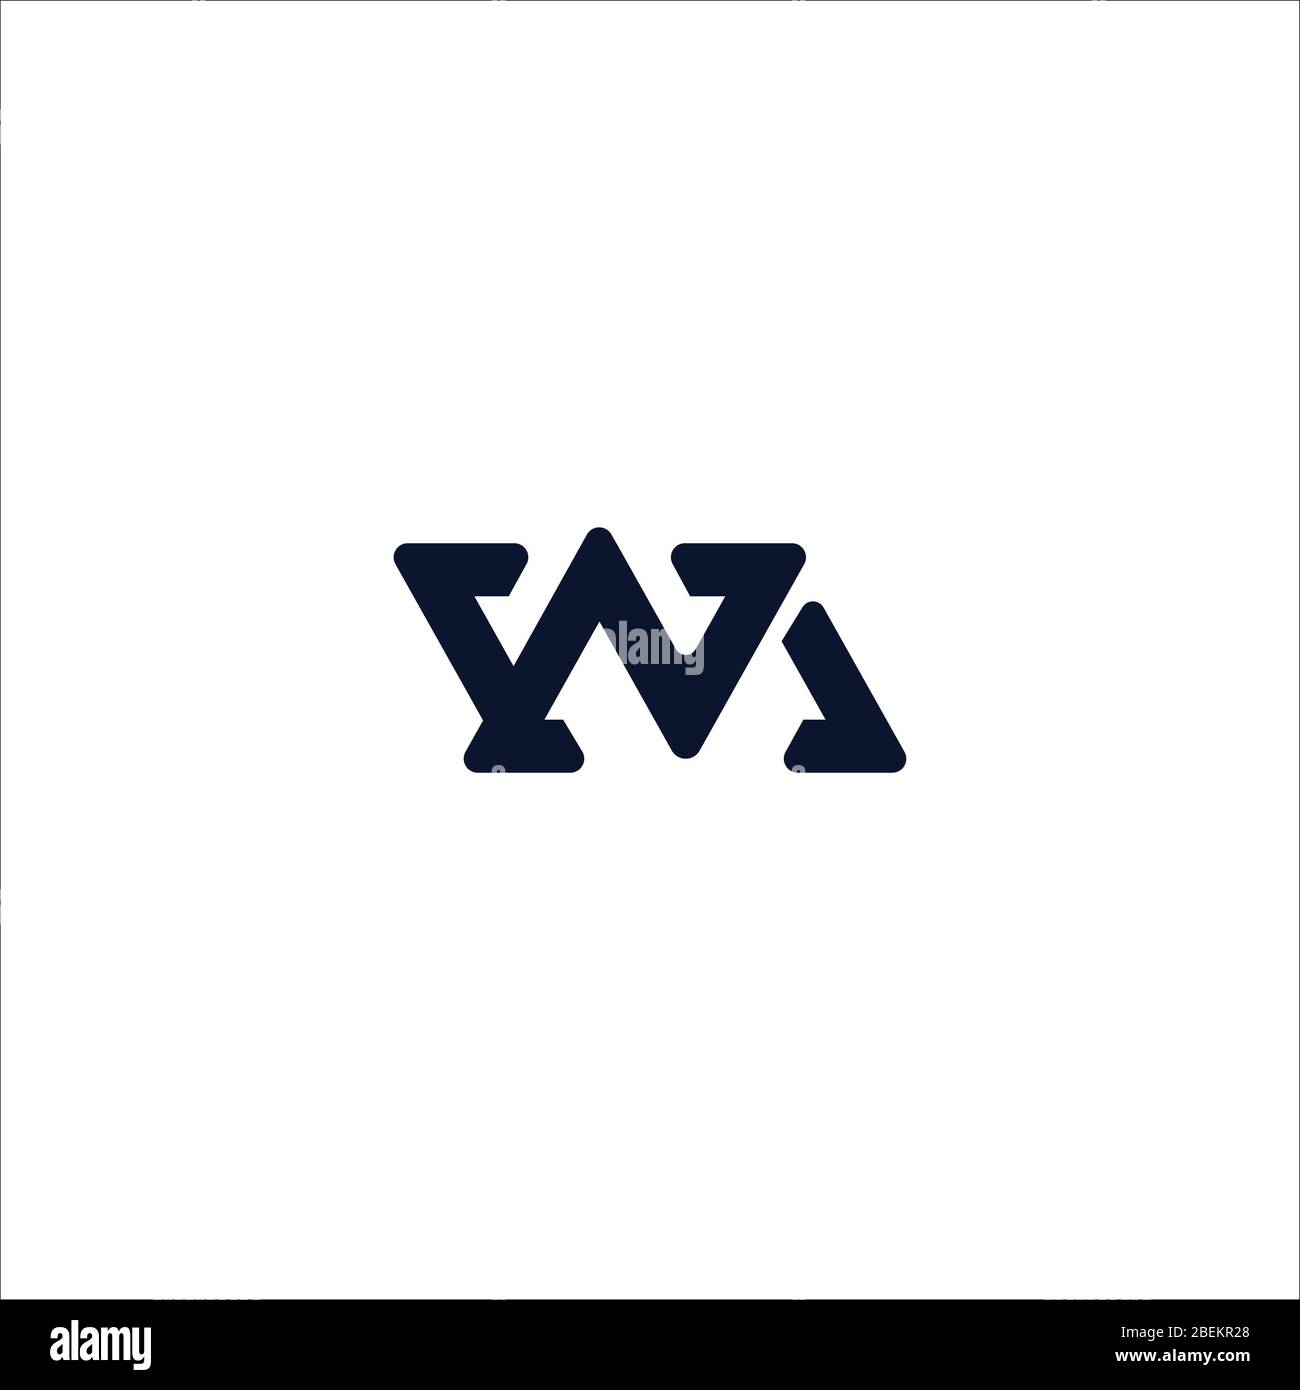 19 WM Logo samples ideas  logo samples, ? logo, logo design